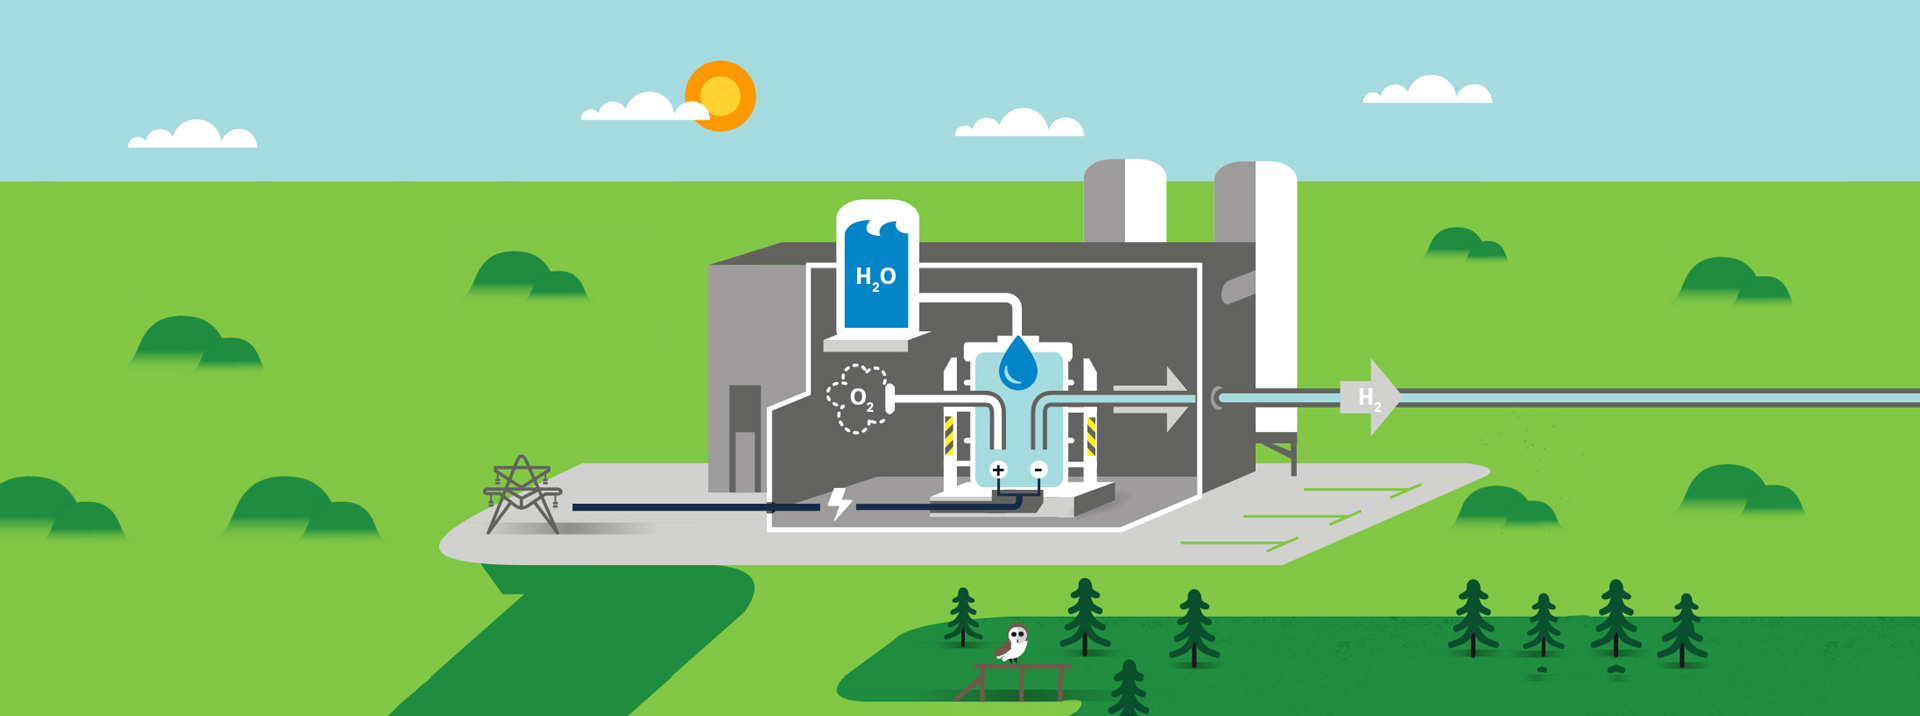 Illustration av vätgasproduktion